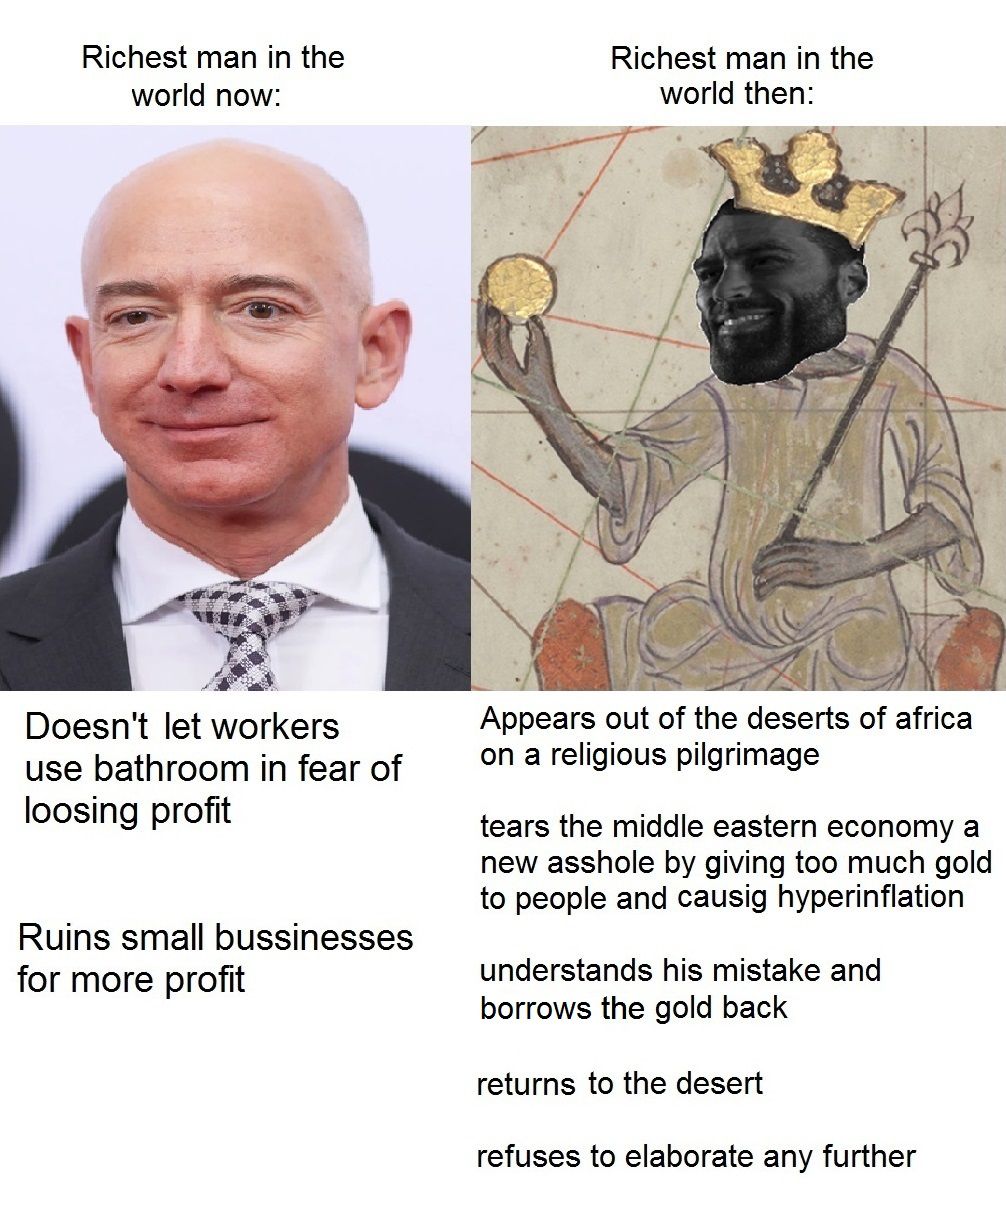 Mansa Musa was such OG